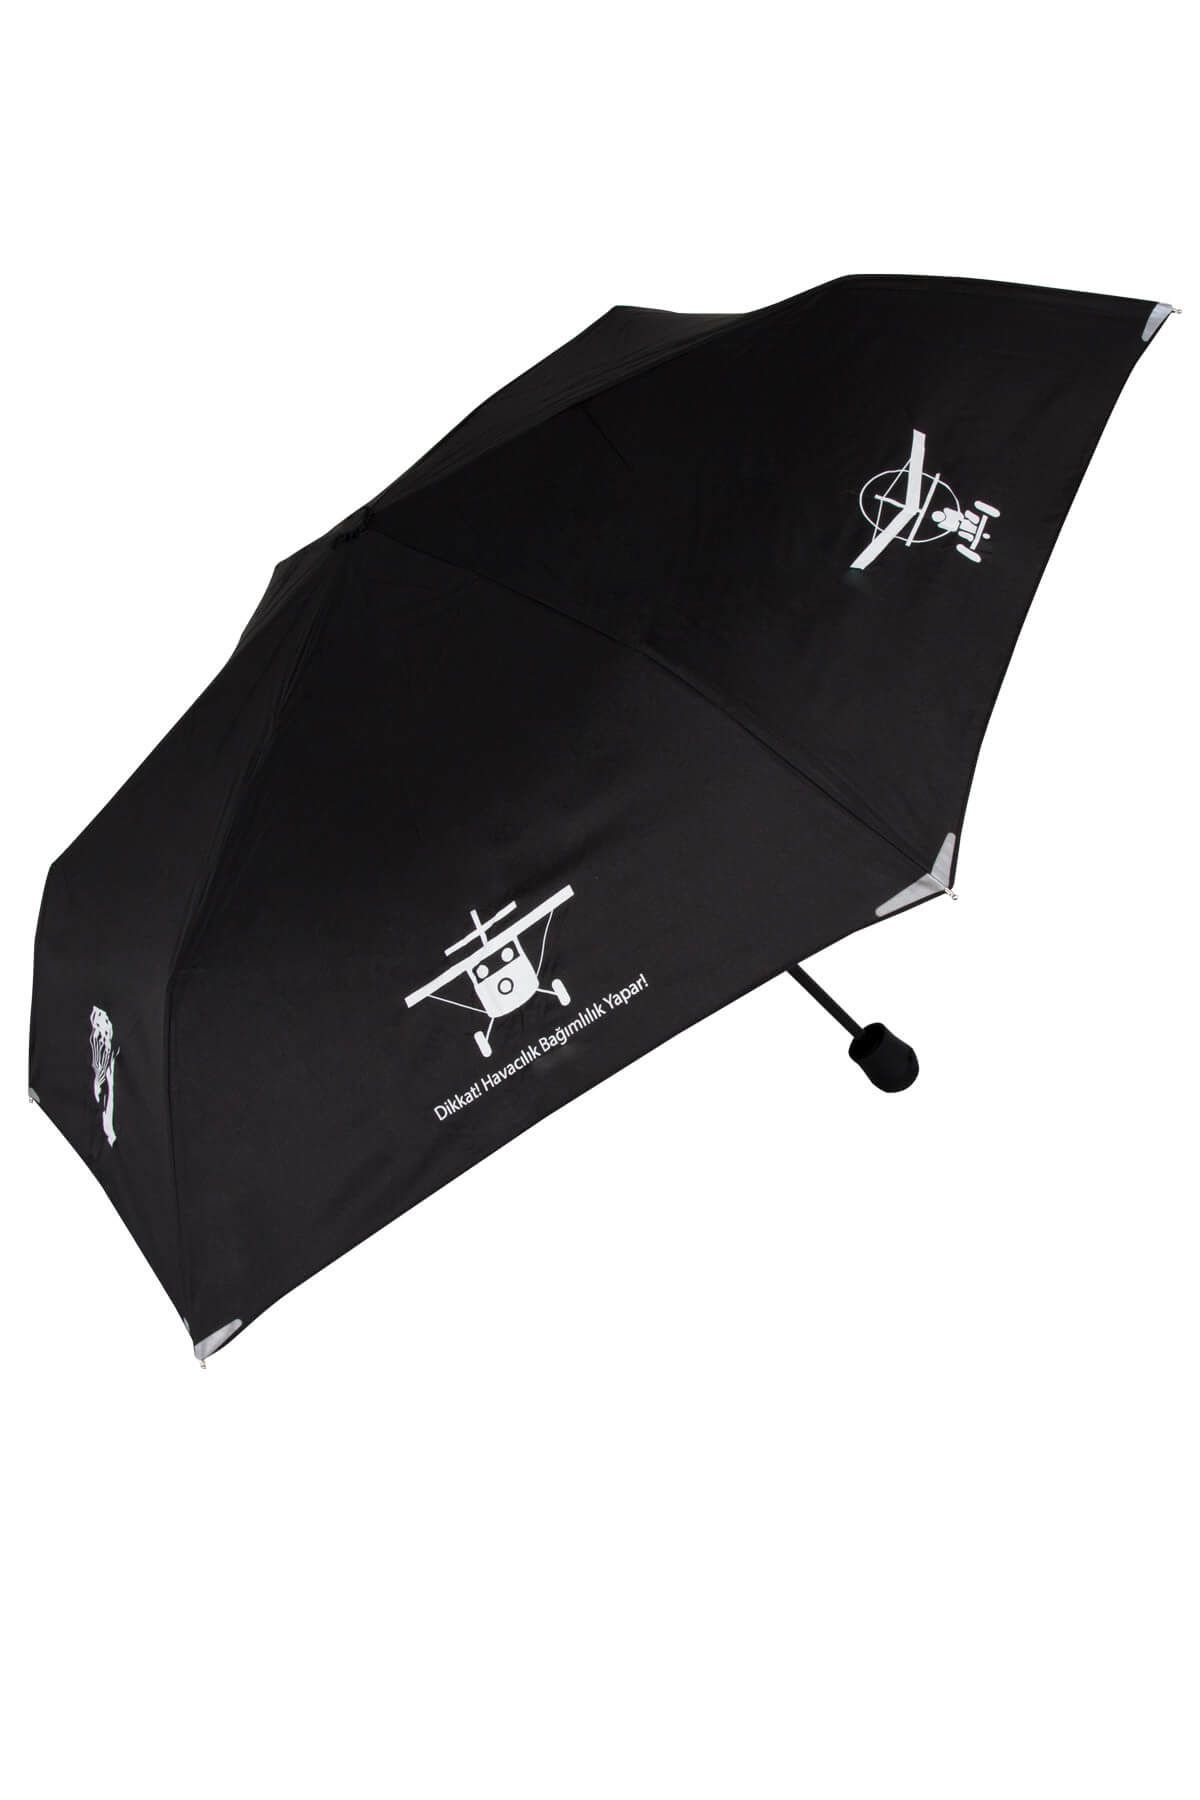 THK Design Safebrella Led Işıklı Mini Şemsiye